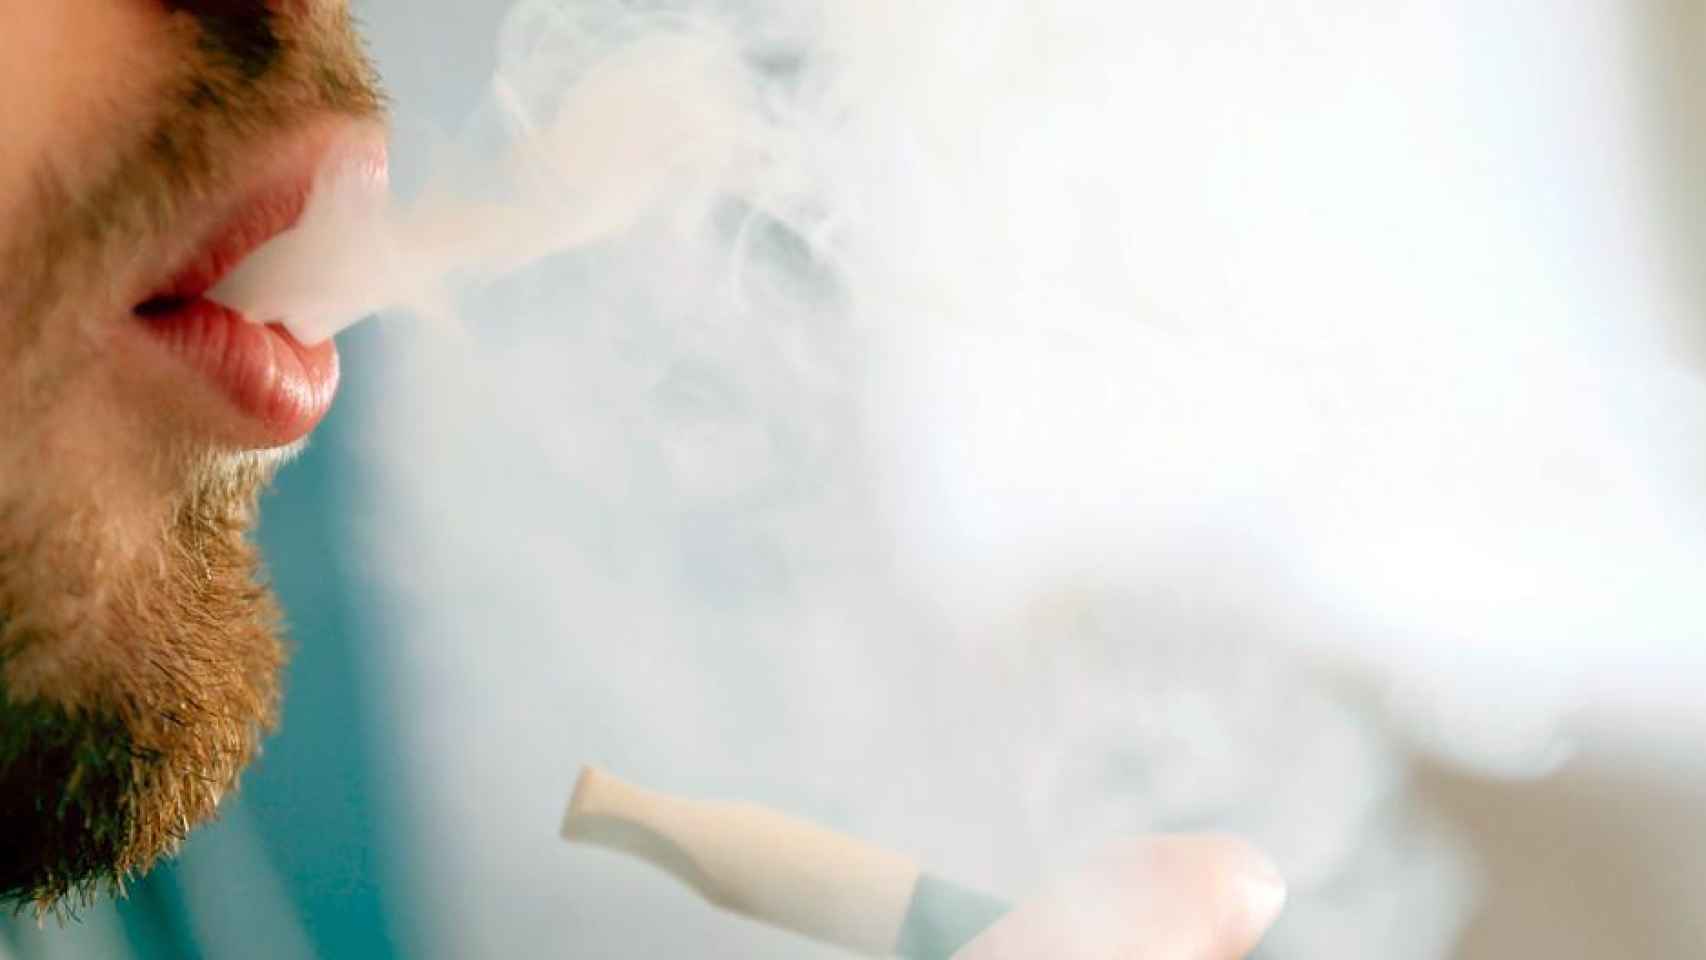 Un estudio apunta al cigarrillo electrónico como la terapia más